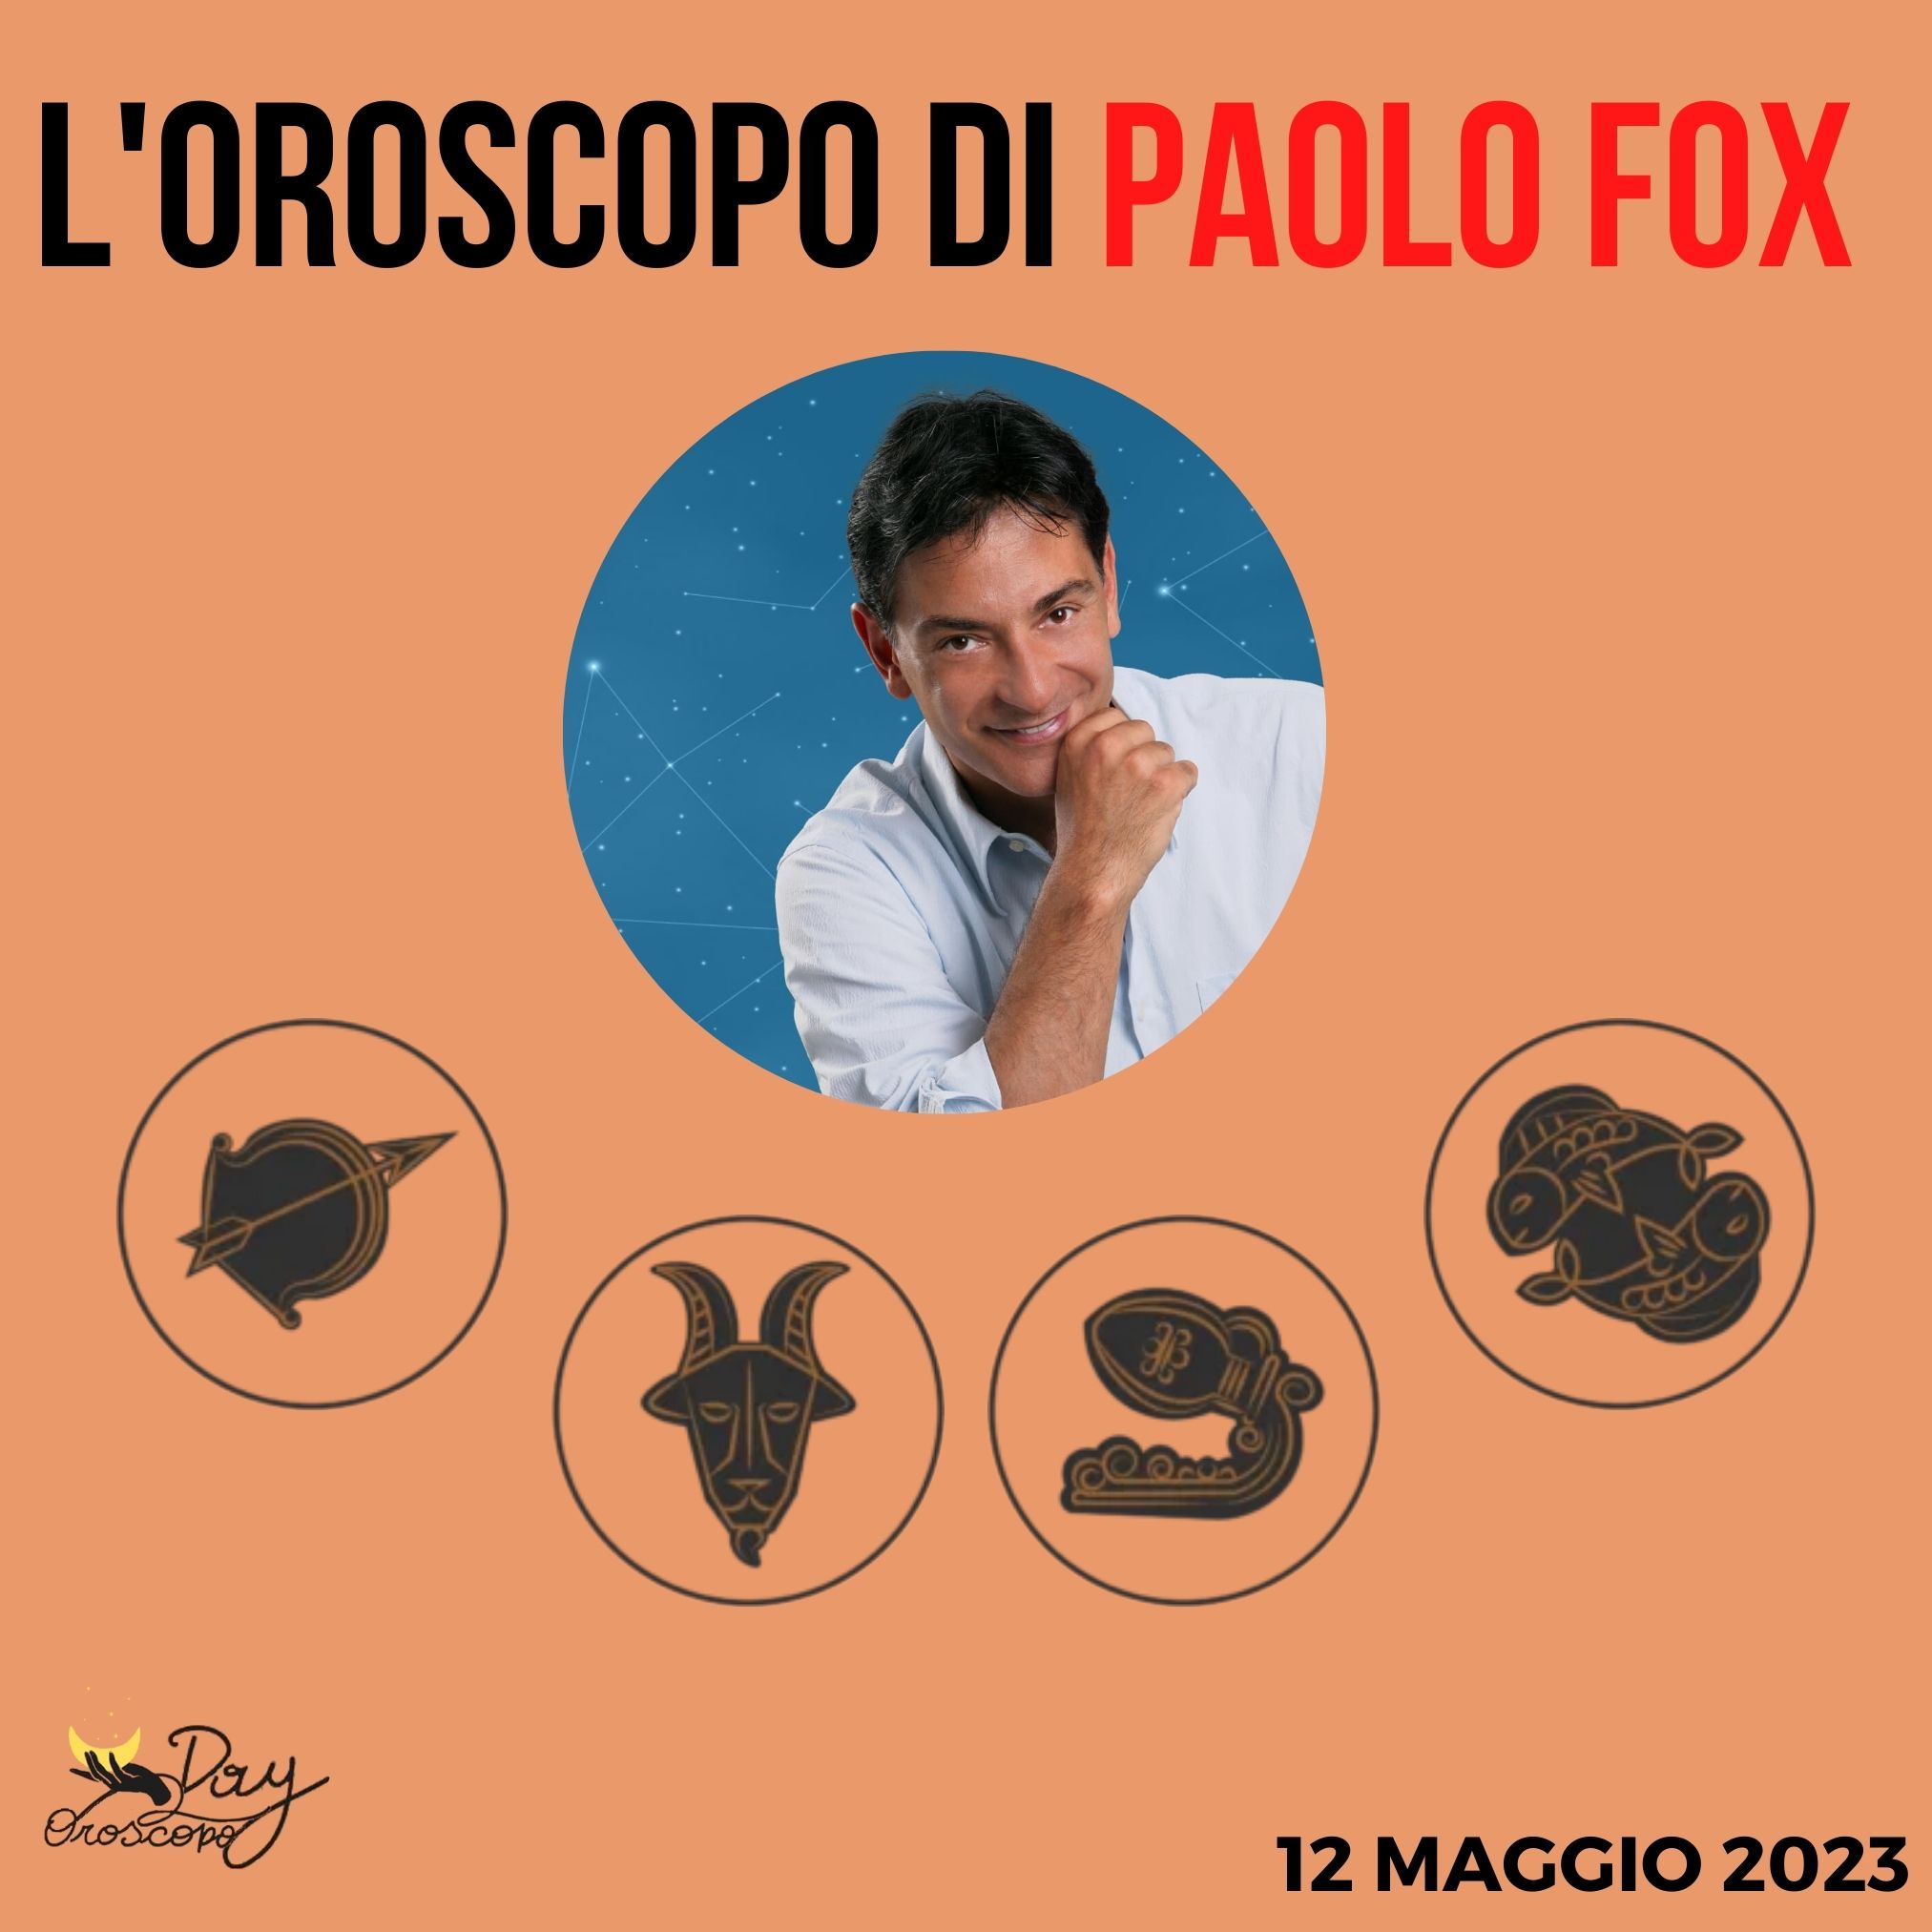 Oroscopo oggi domani Paolo Fox 12 maggio Sagittario Capricorno Acquario Pesci